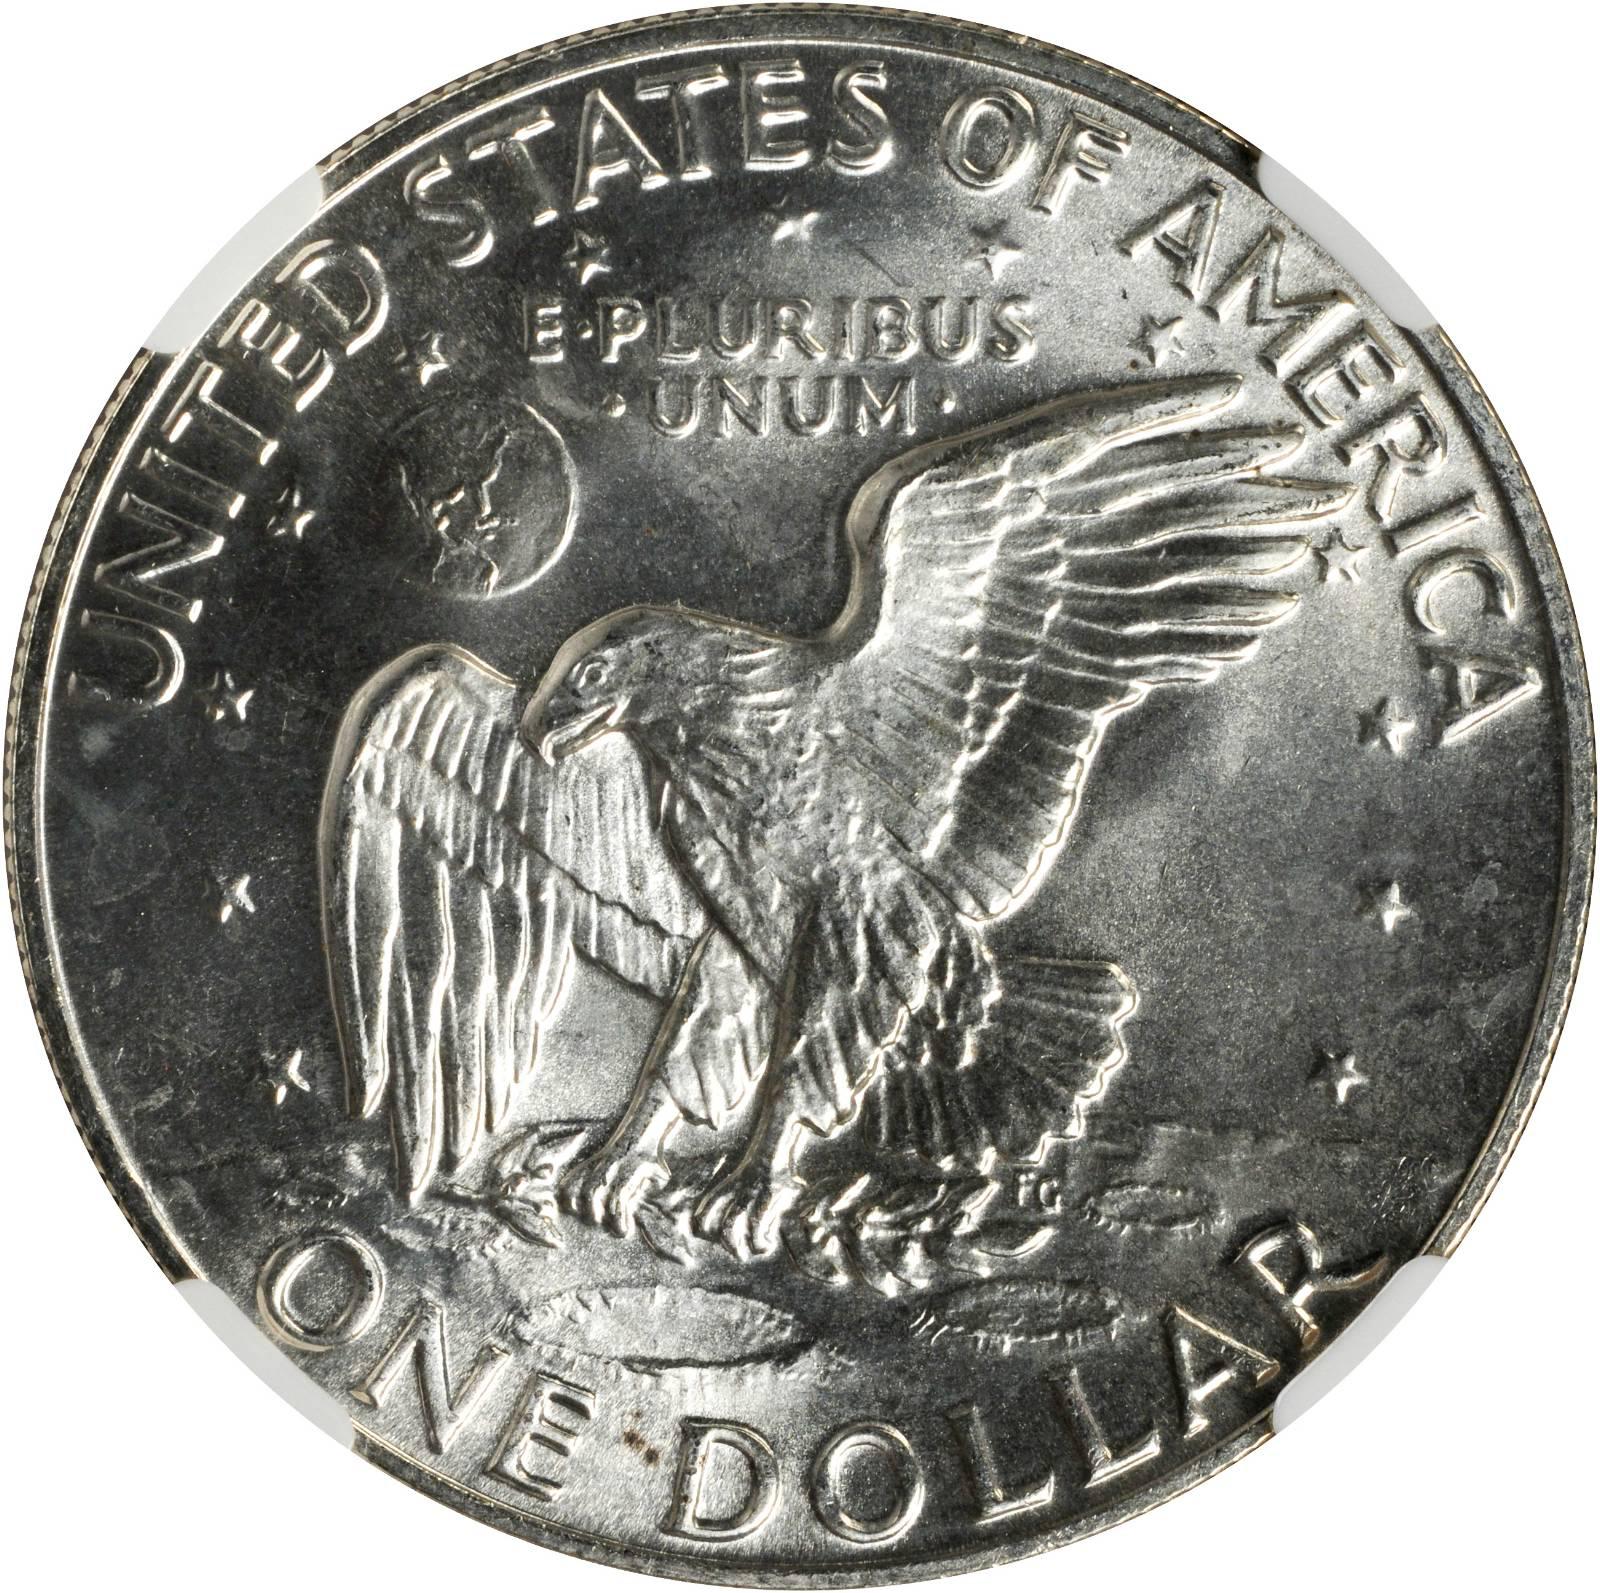 Details about   1974 Eisenhower D Dollar BU 